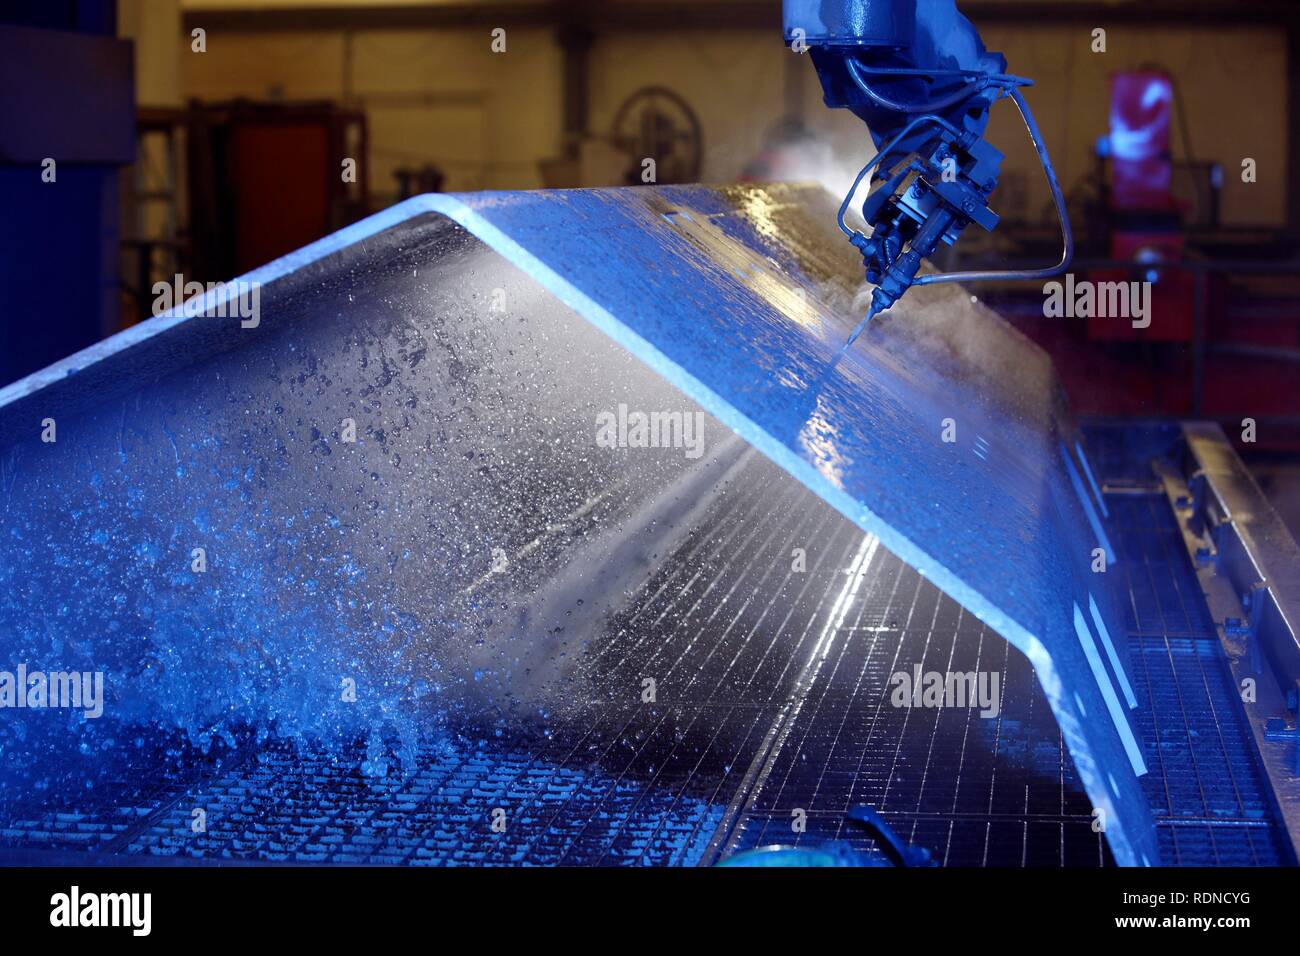 Wasserstrahltechnik, präzise Technologie für das Schneiden von Metall mit  einem Hochdruck-wasserstrahl, wo einem scheuernden Material hinzugefügt  wird Stockfotografie - Alamy